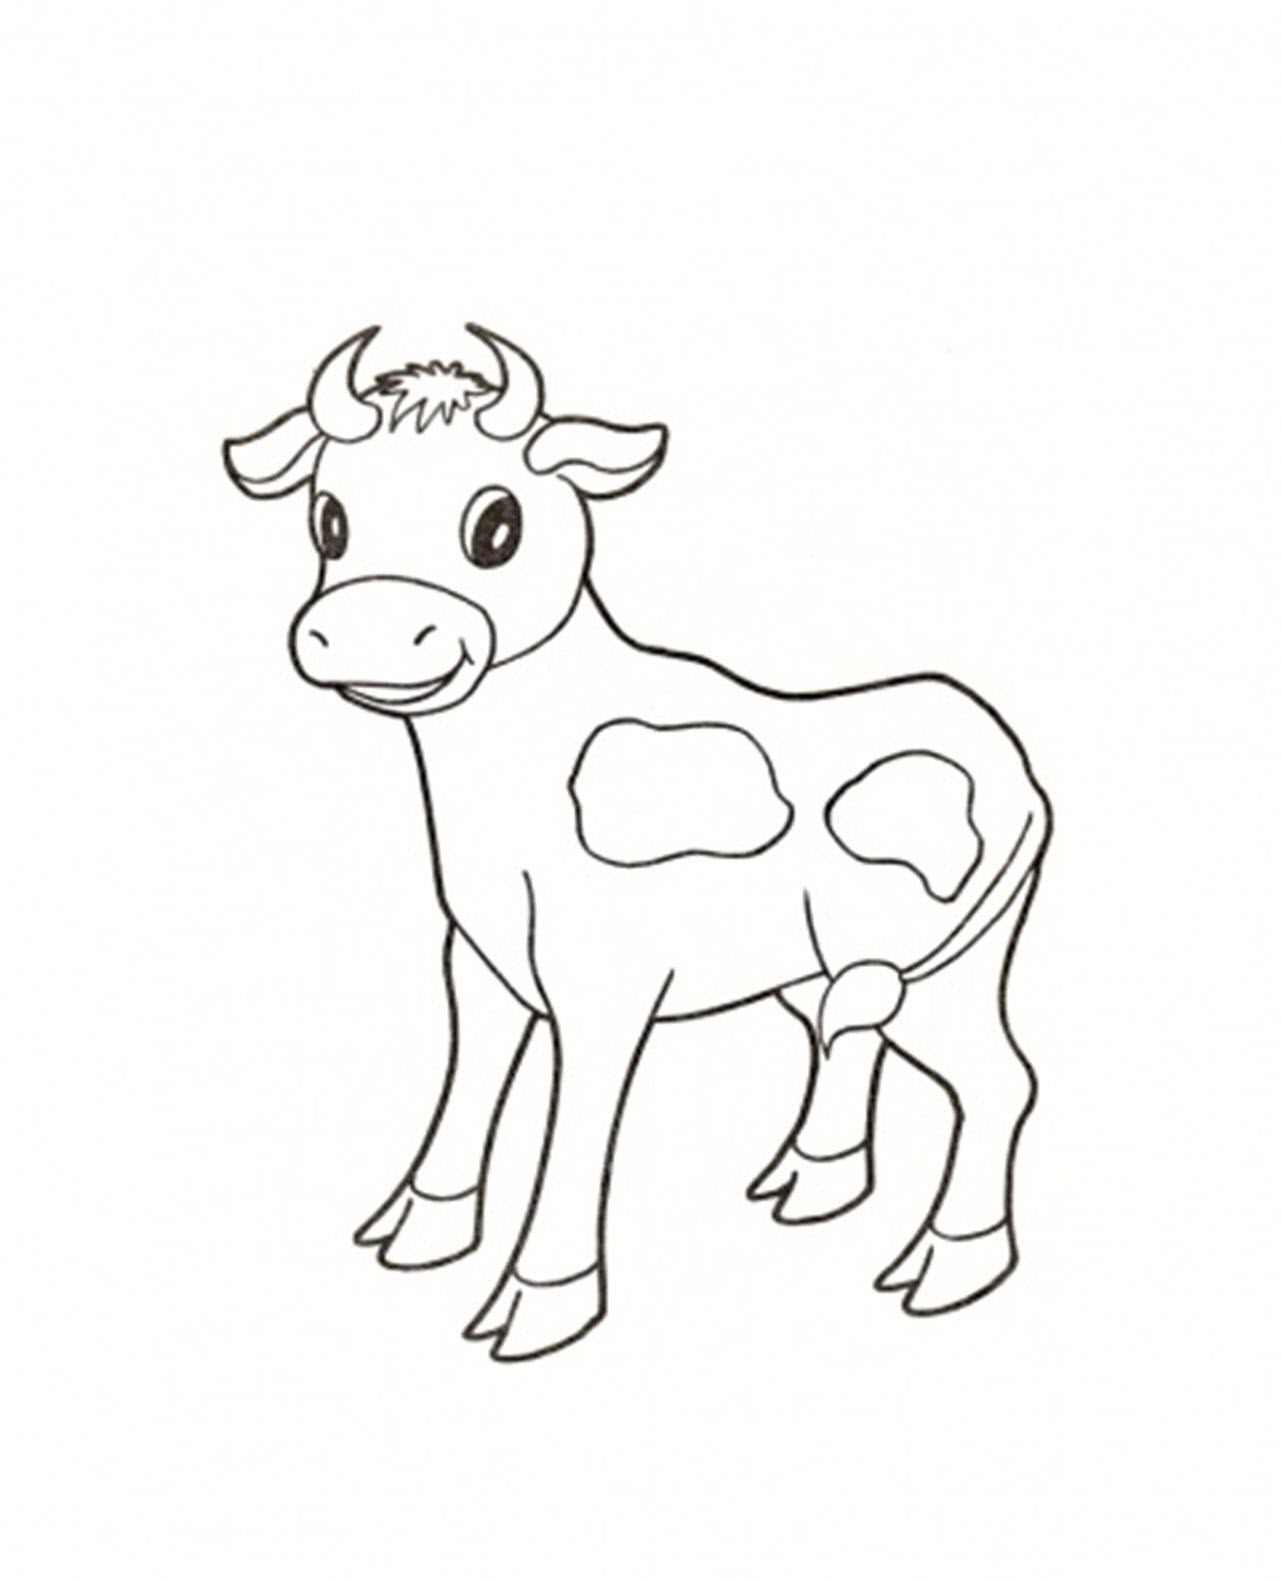 Tải xuống miễn phí minh họa bò sữa ai - minh họa bò sữa - Urbanbrush